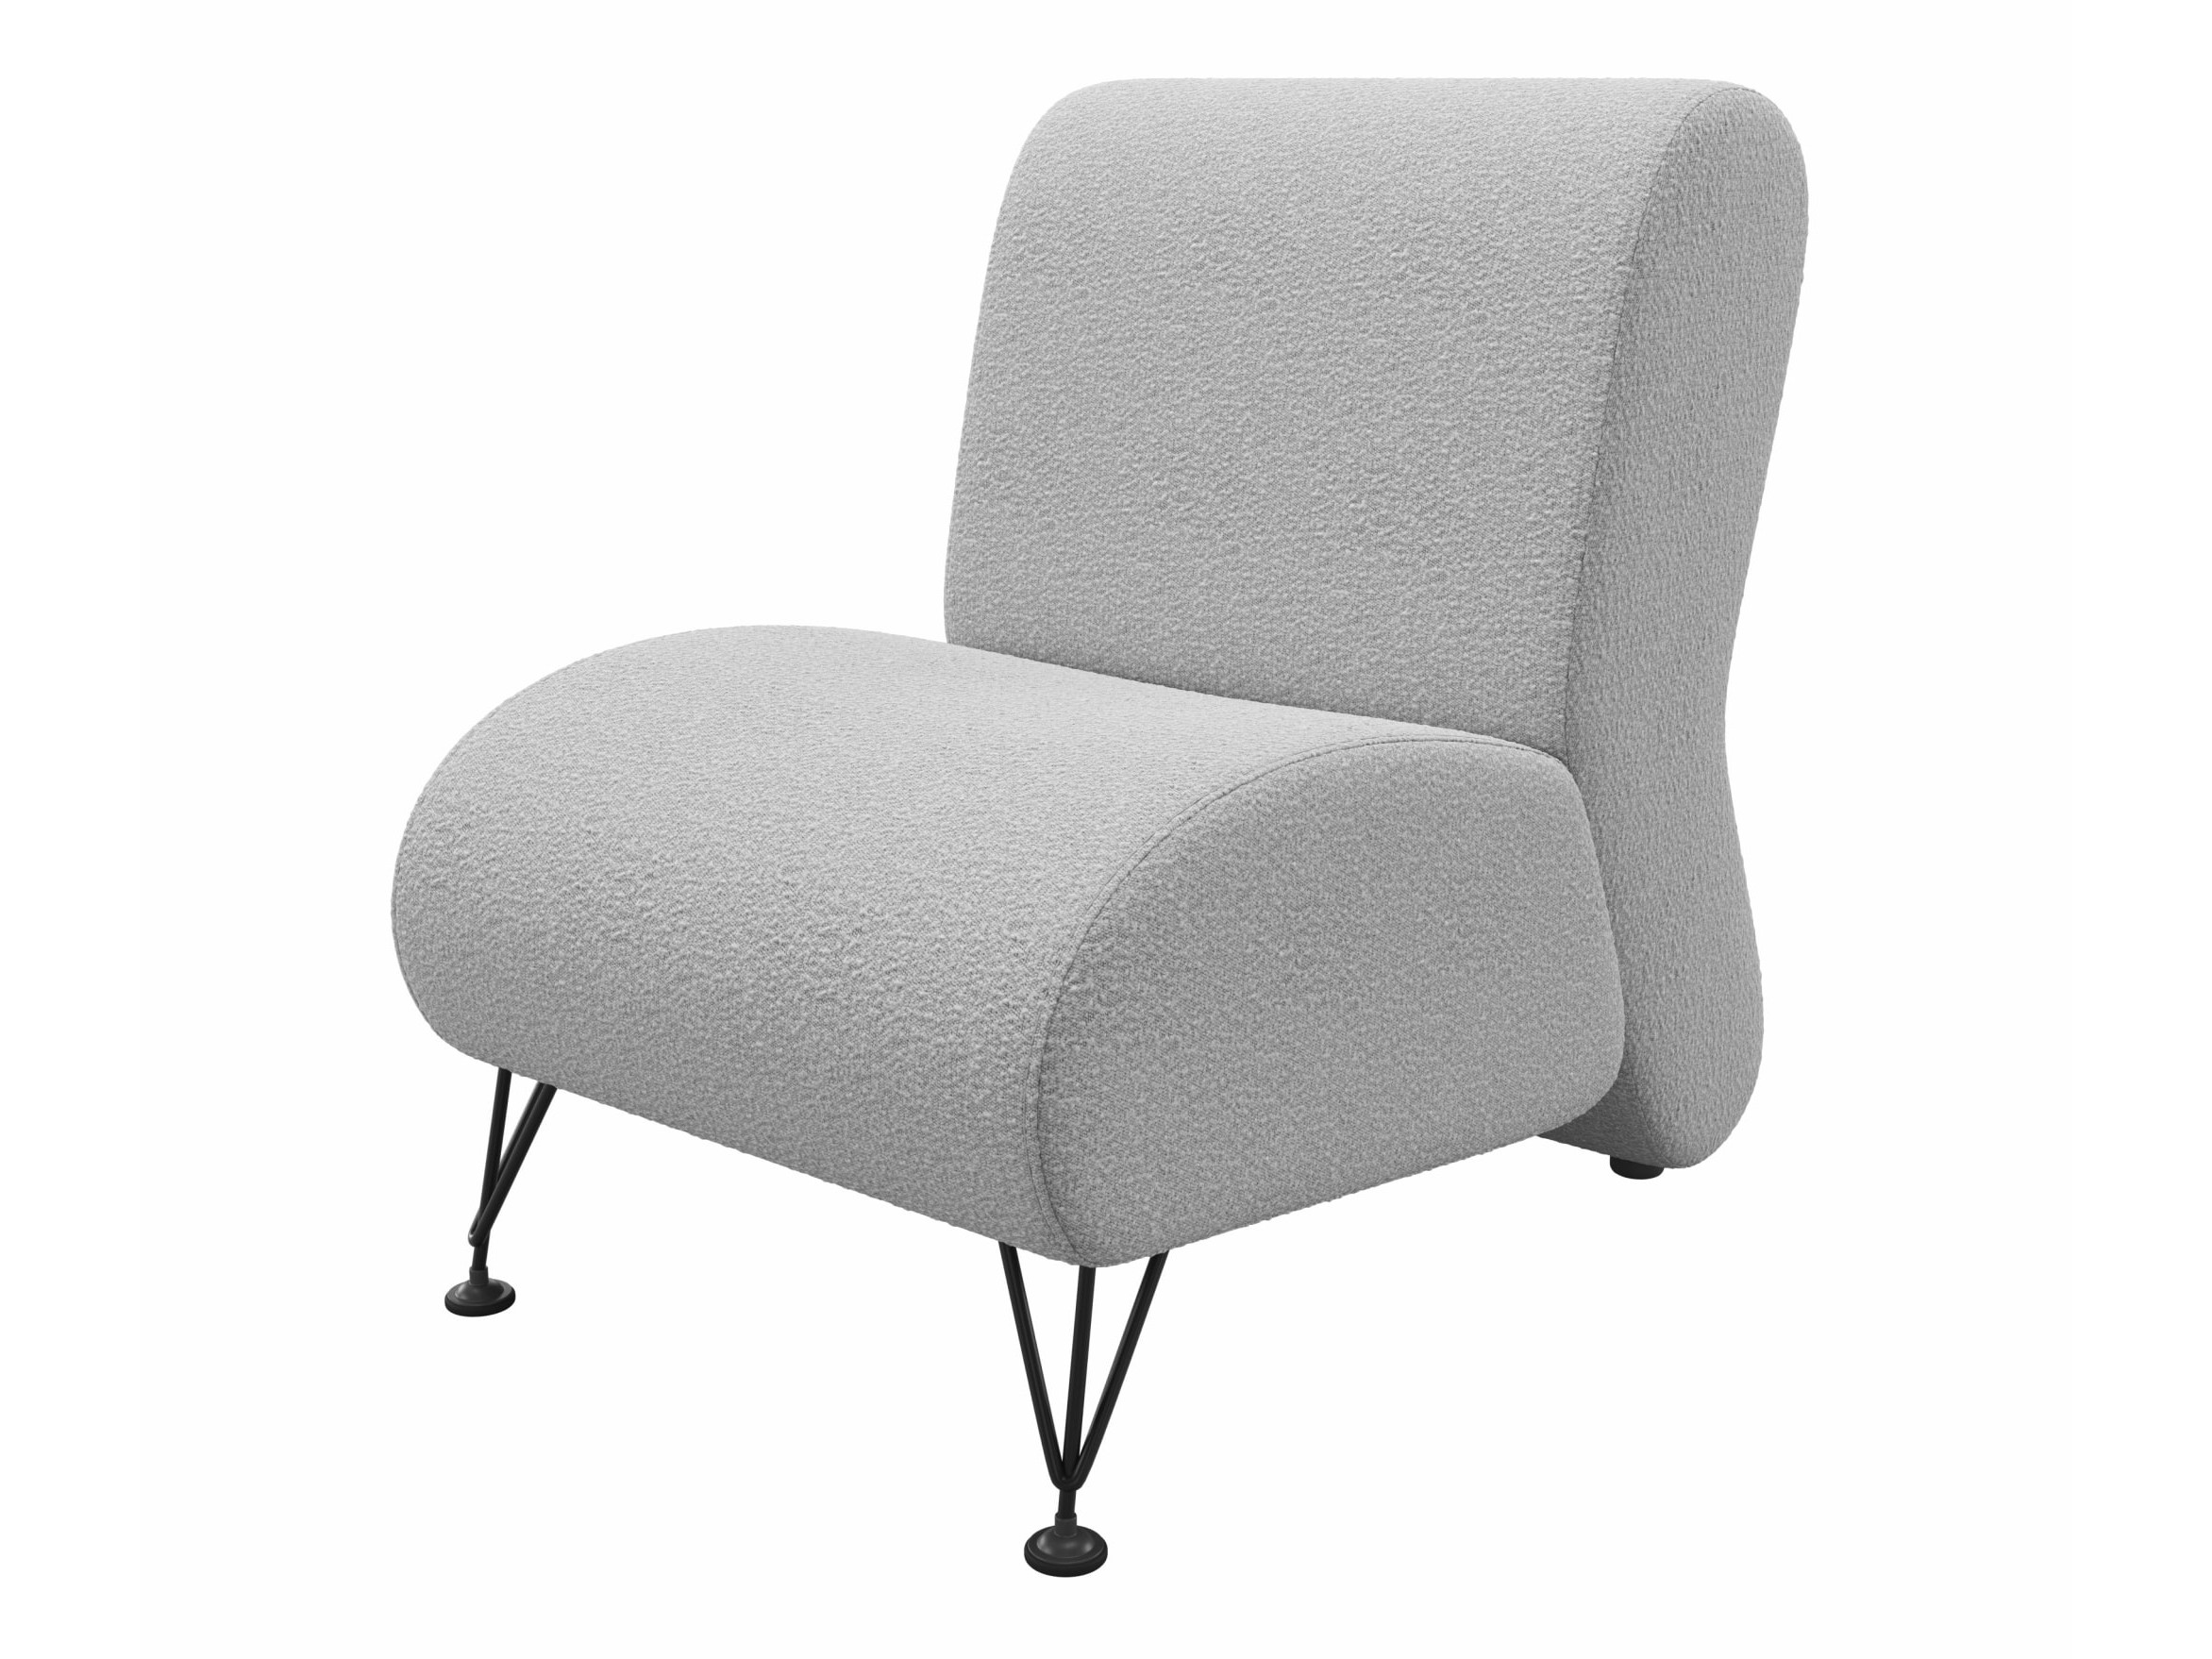 Мягкое дизайнерское кресло Pati букле светло-серый MebelVia светло-серый, букле фото